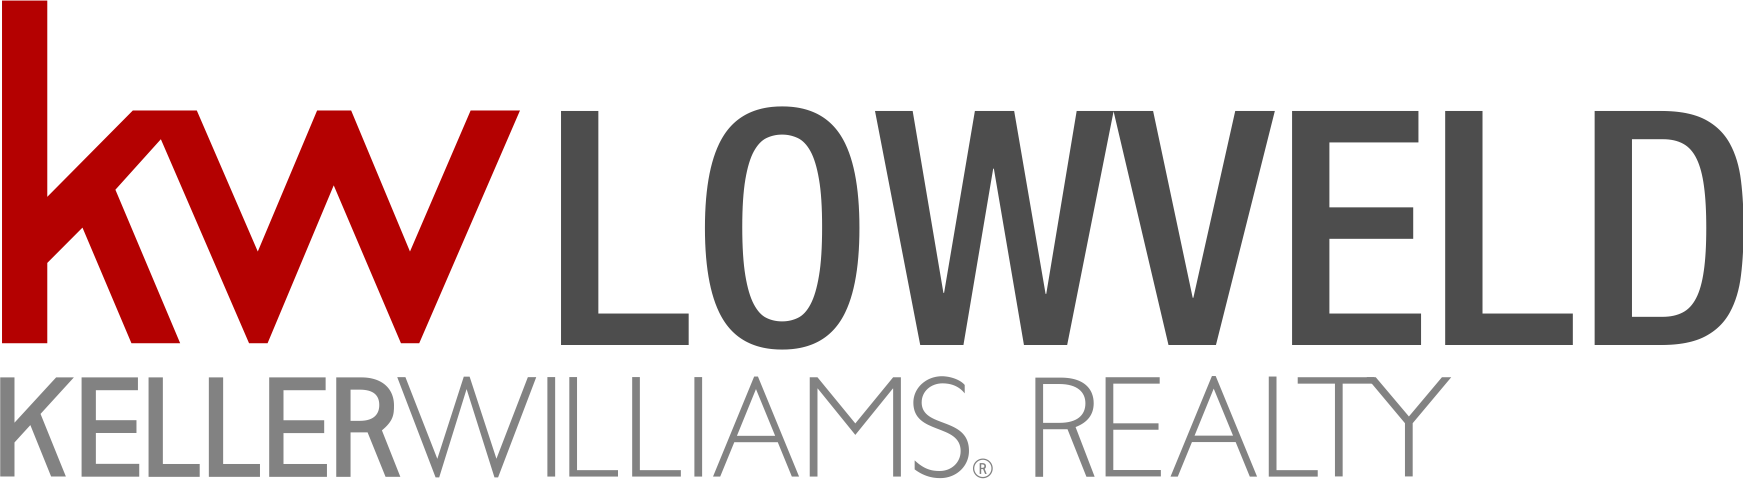 KW Lowveld office logo